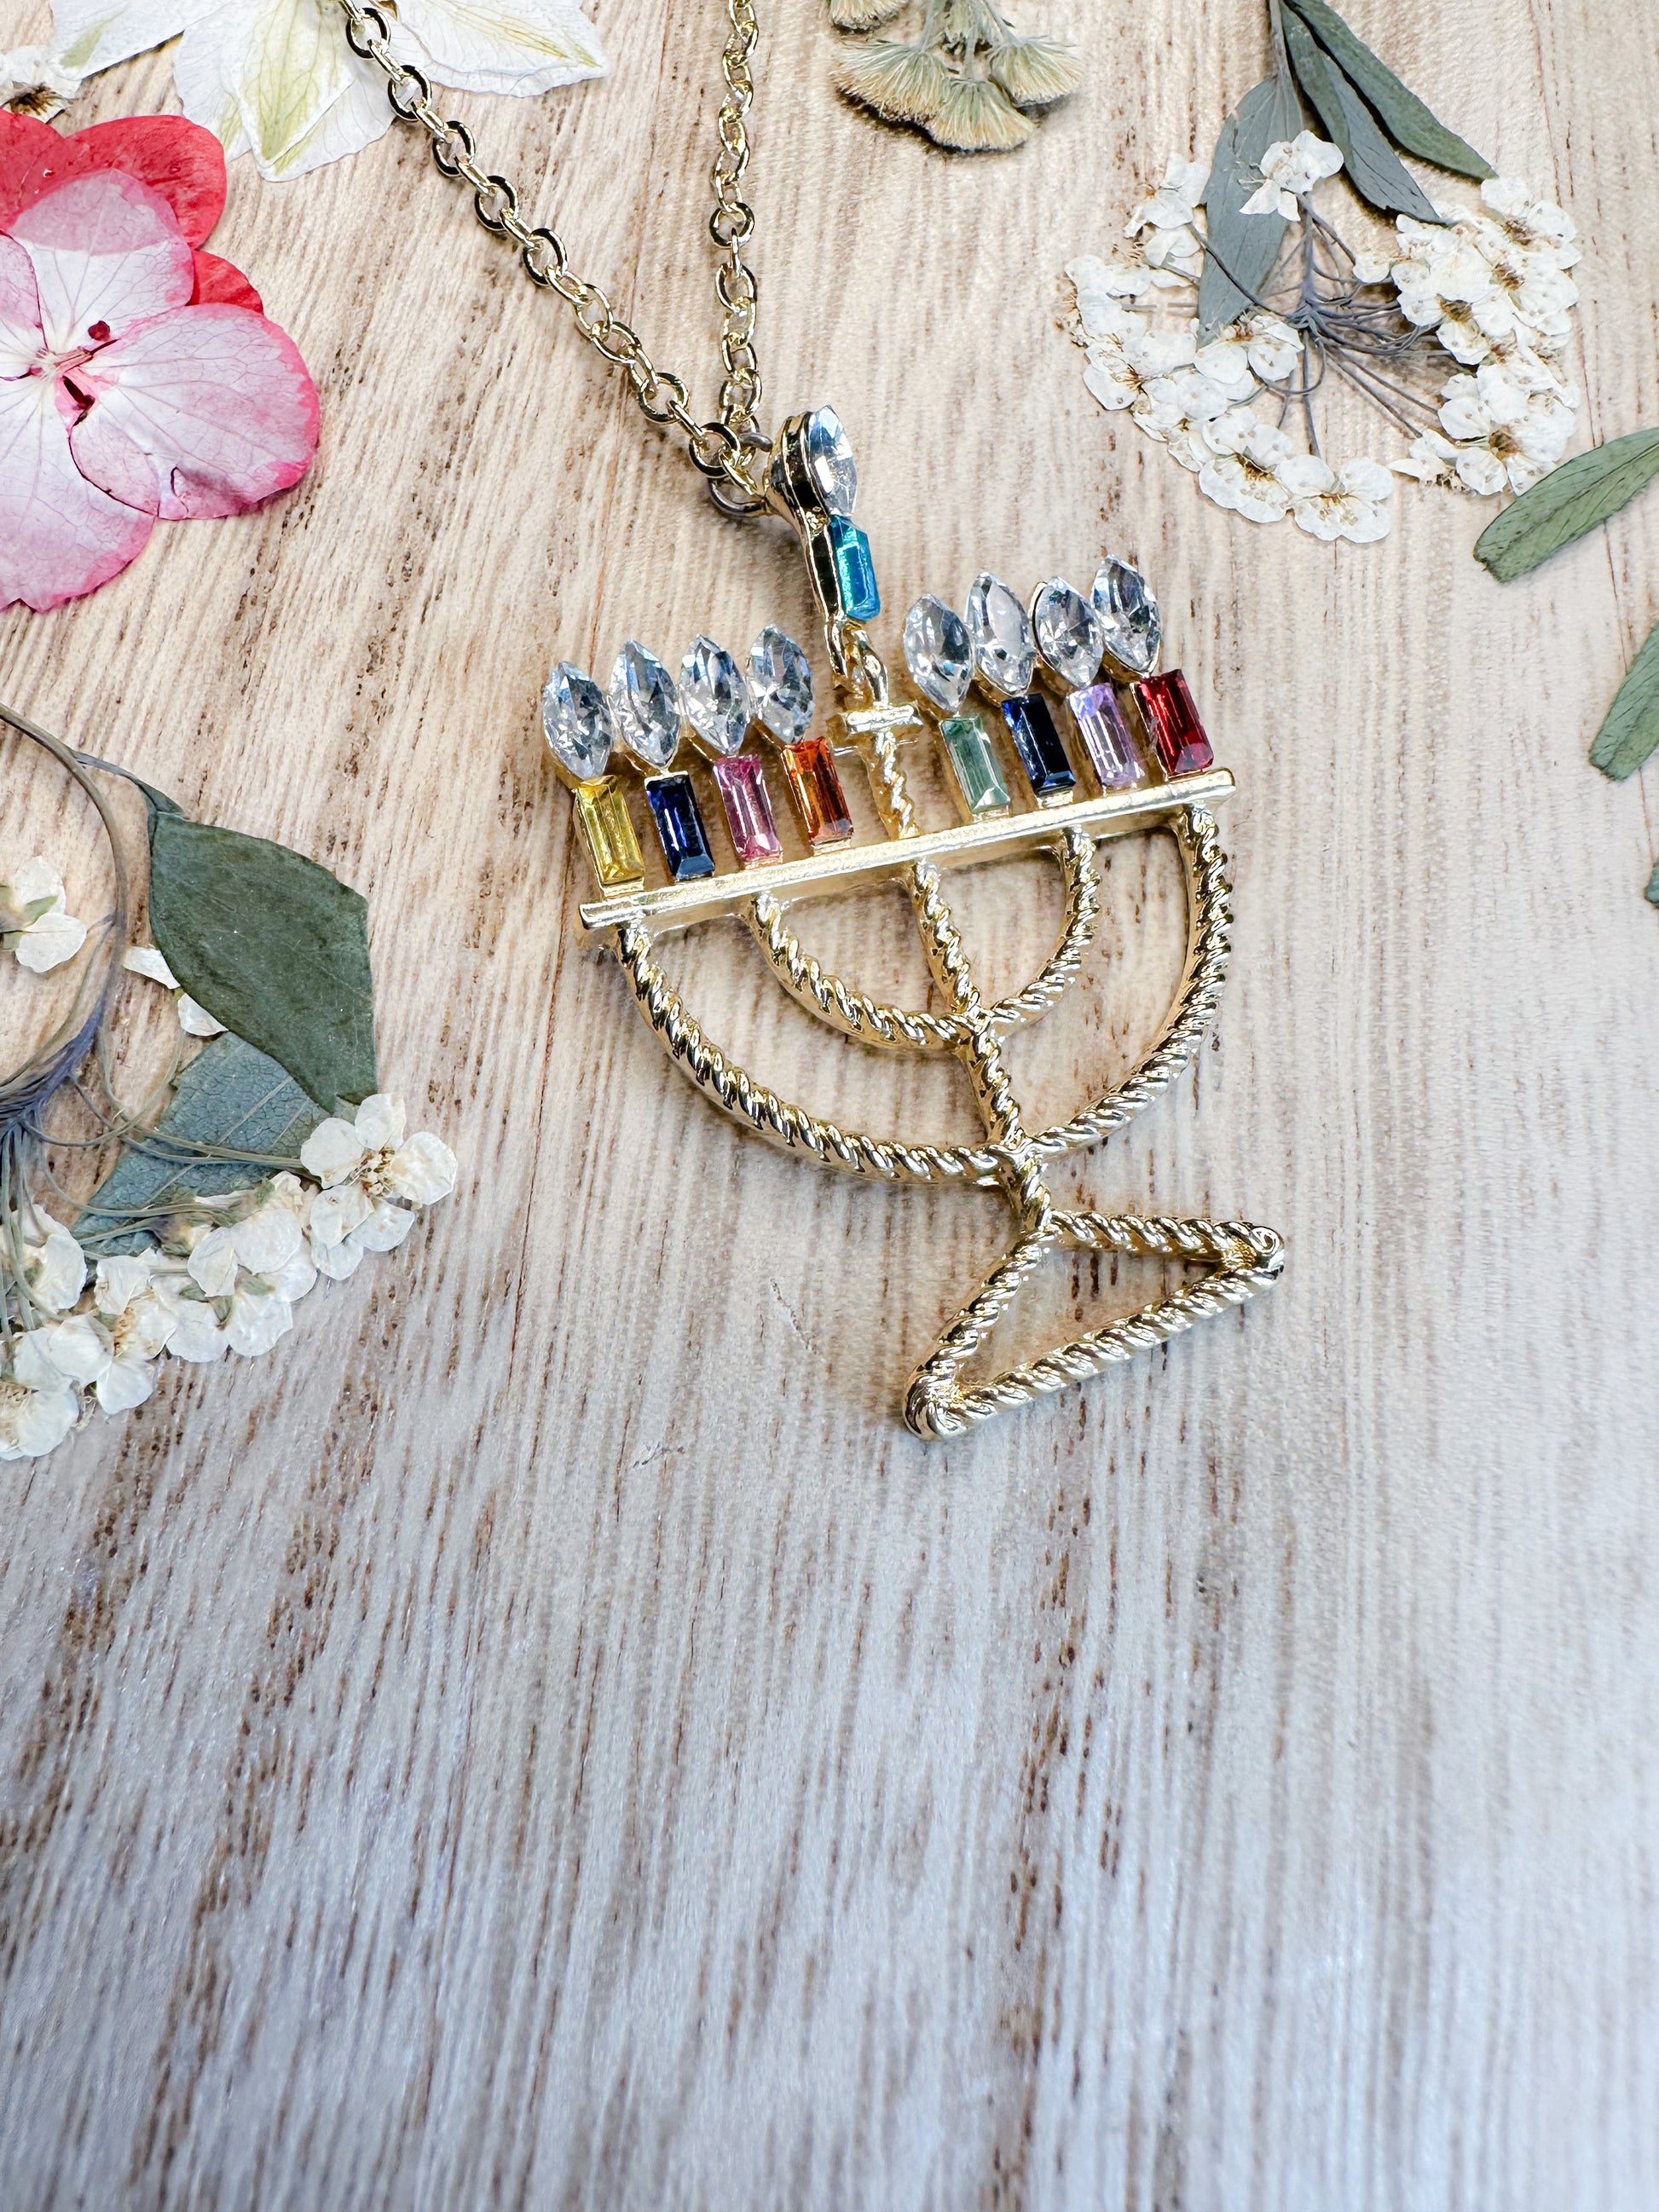 Bottleblond Hanukkah DIY Jewelry Kit